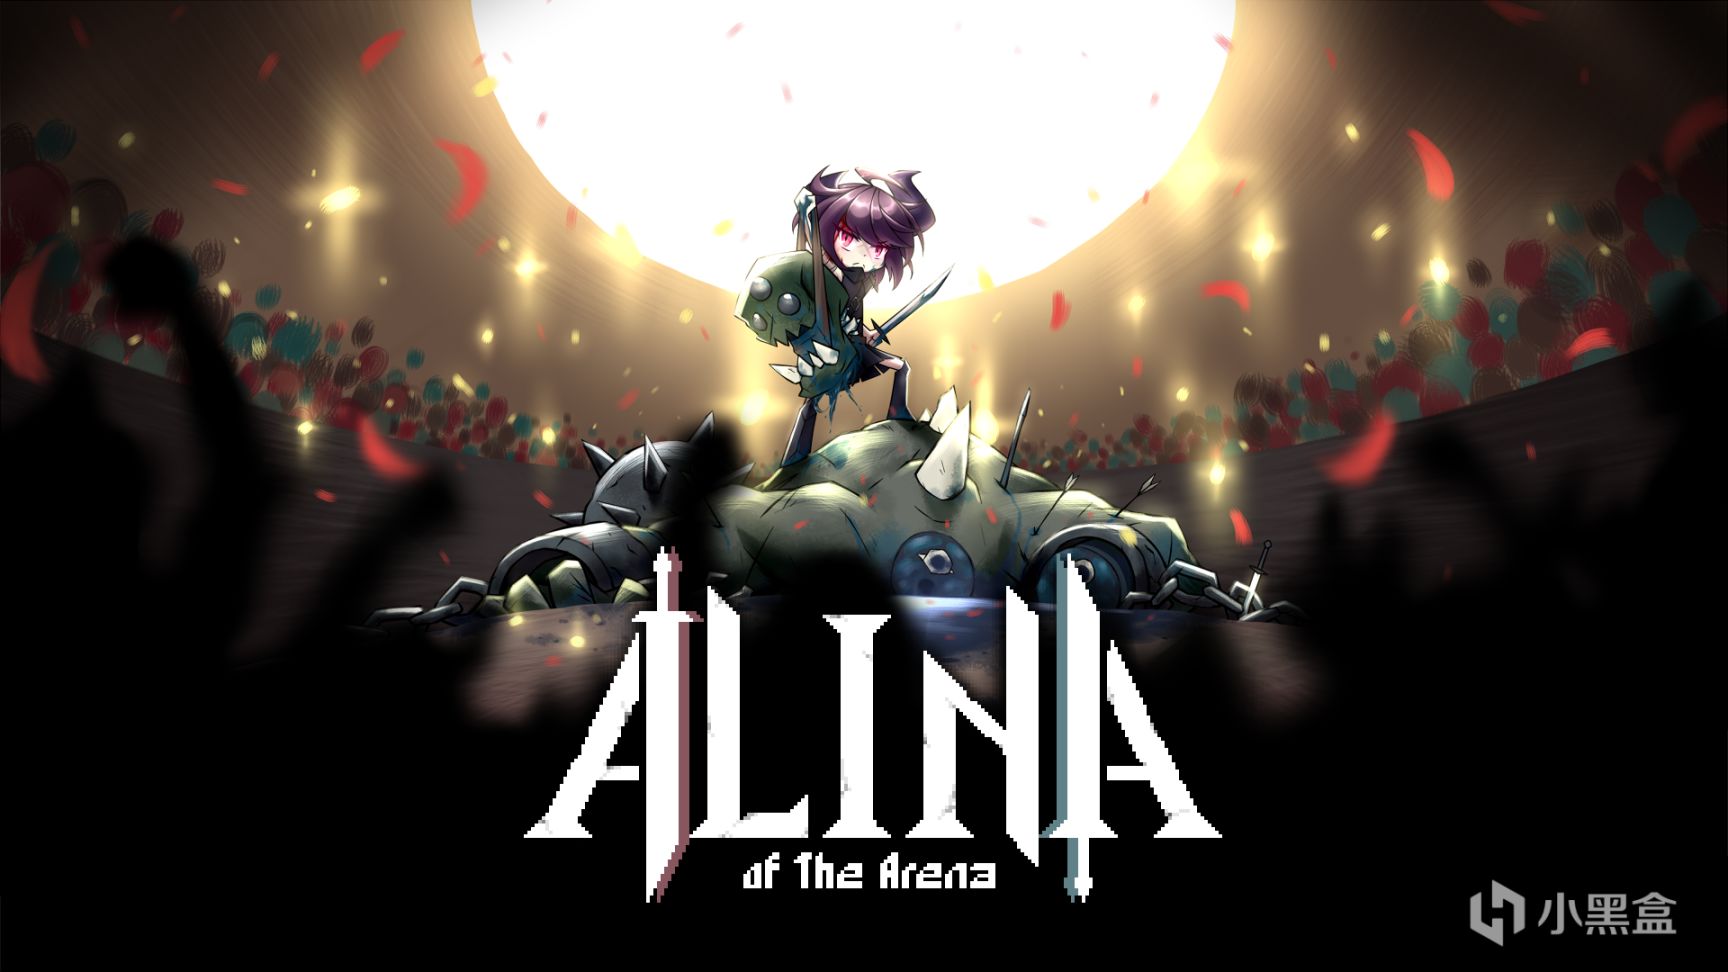 【願望單抽獎】即將於1月19日發售的《鬥技場的阿利娜》目前免費試玩開放中~